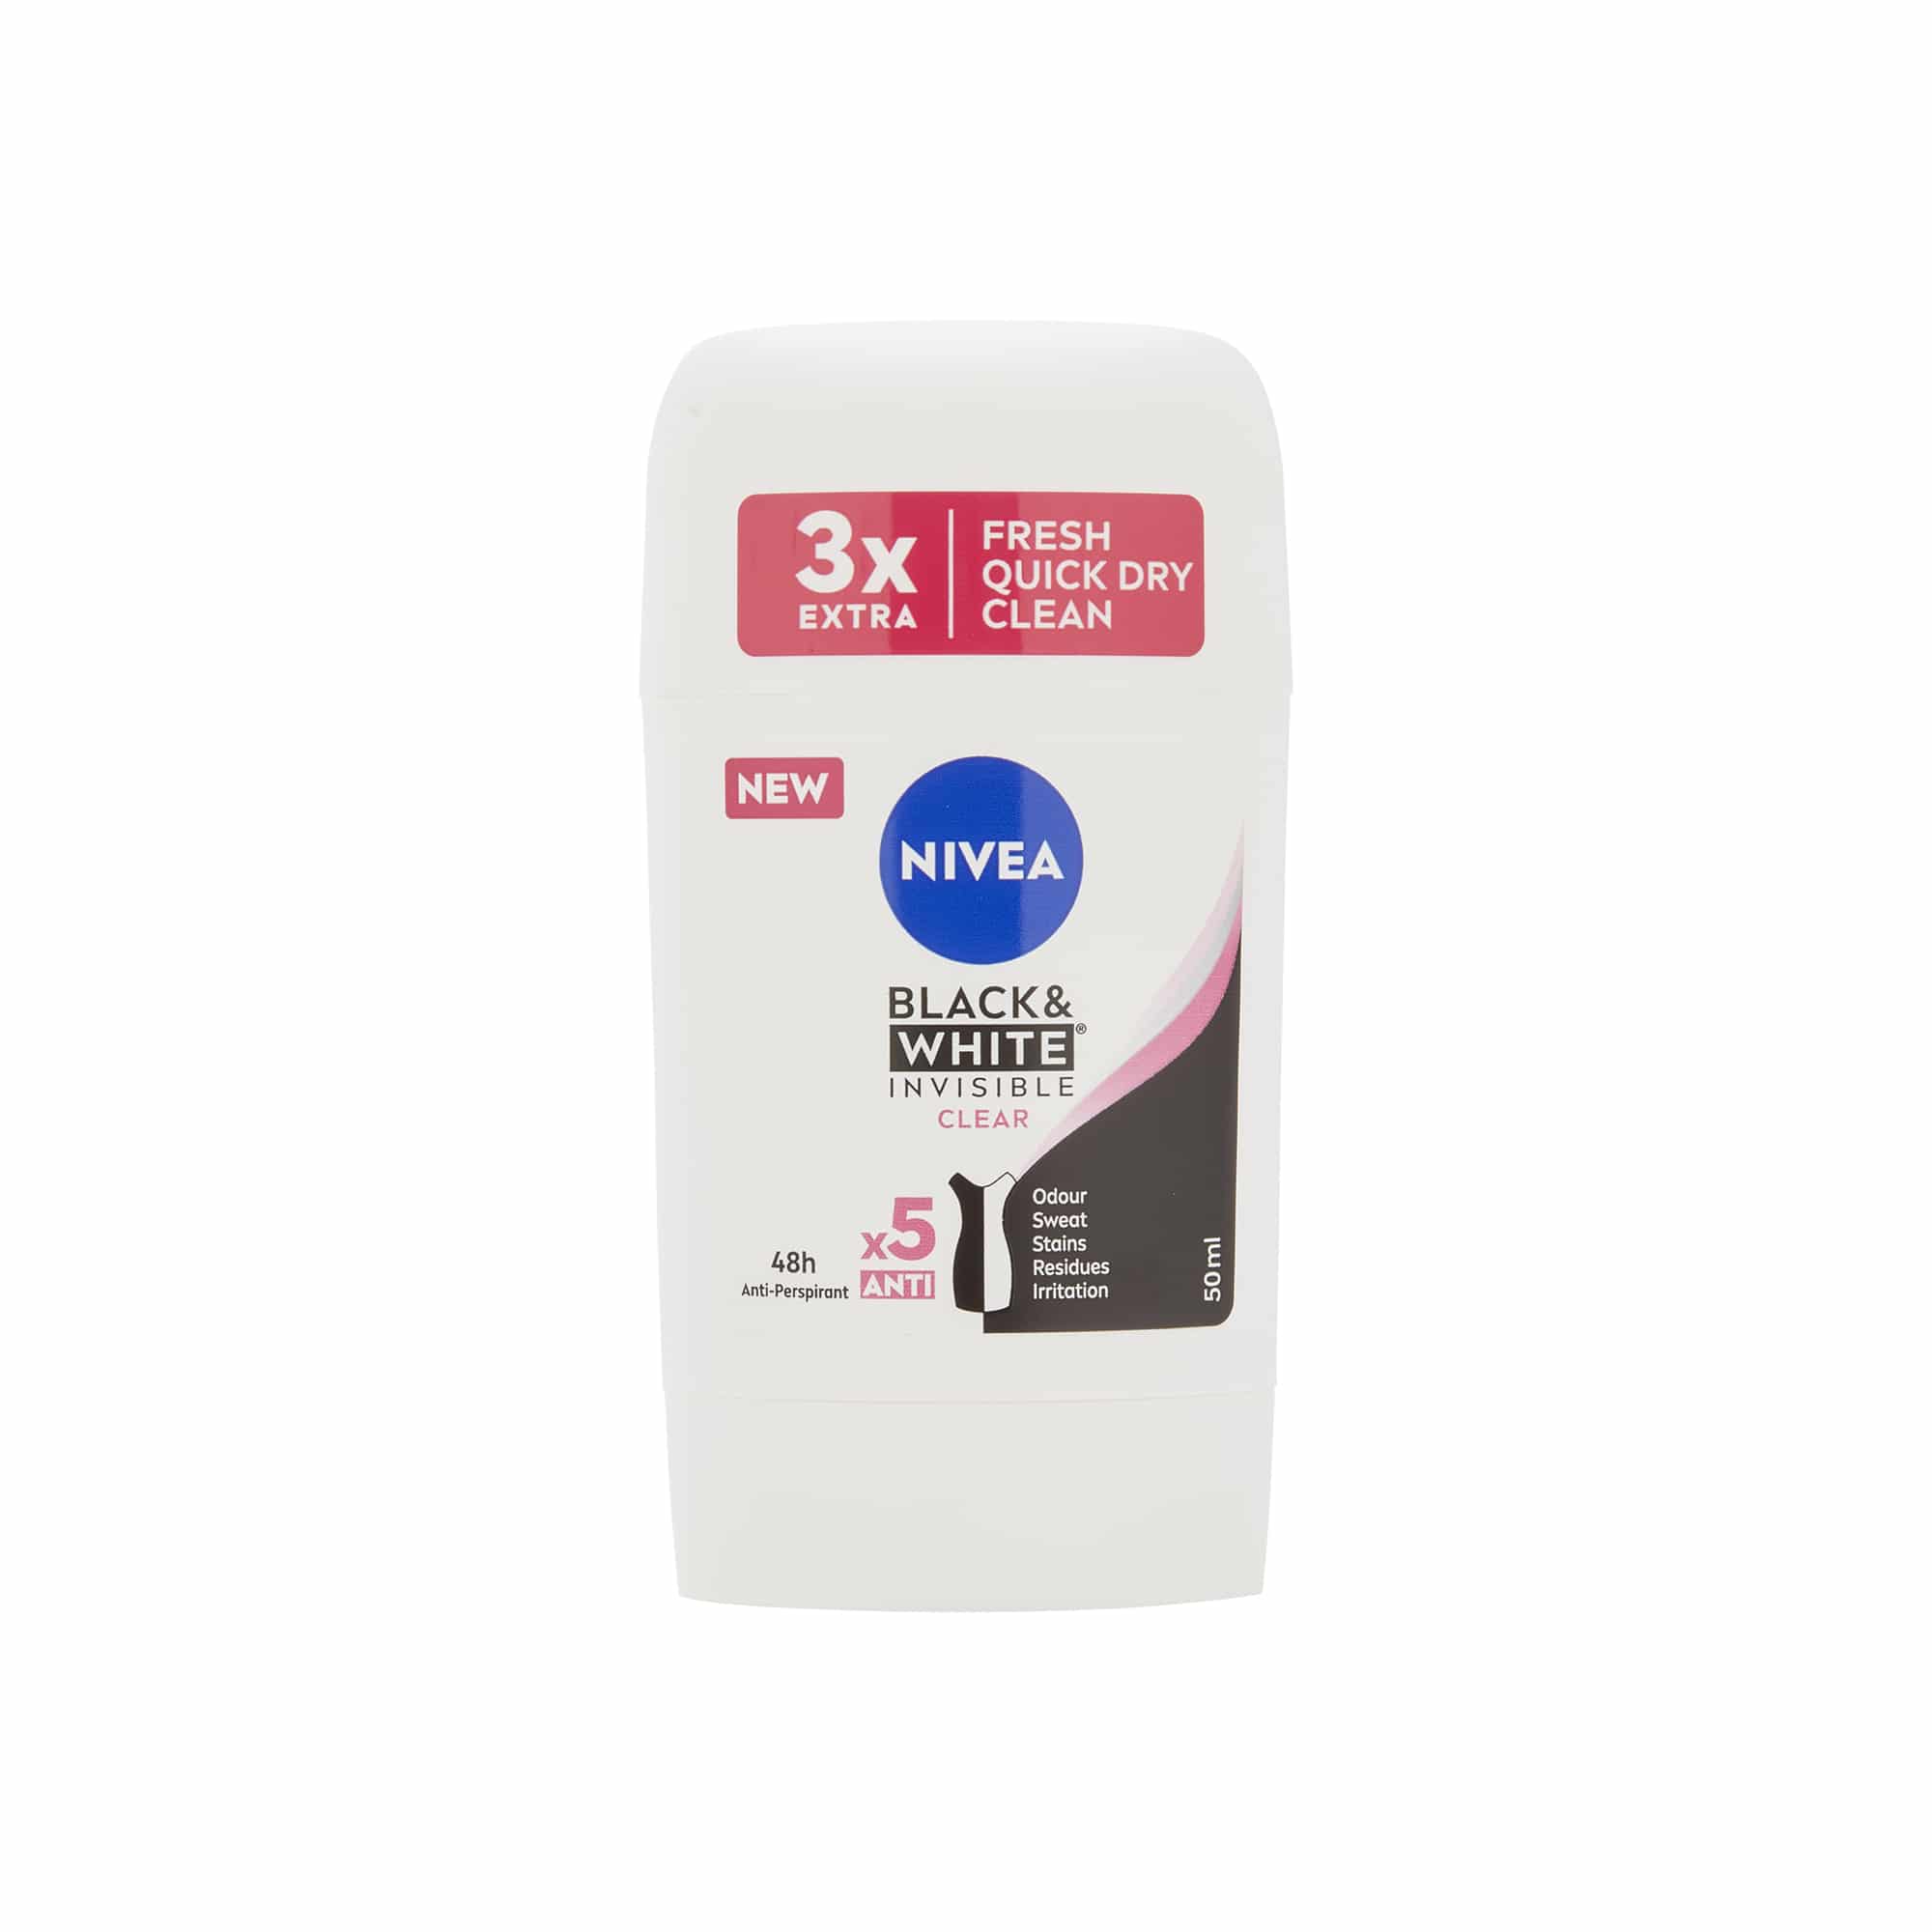 Antiperspirant Deodorant Stick pentru femei Nivea Black & White Invisible Clear, 48h, 40ml